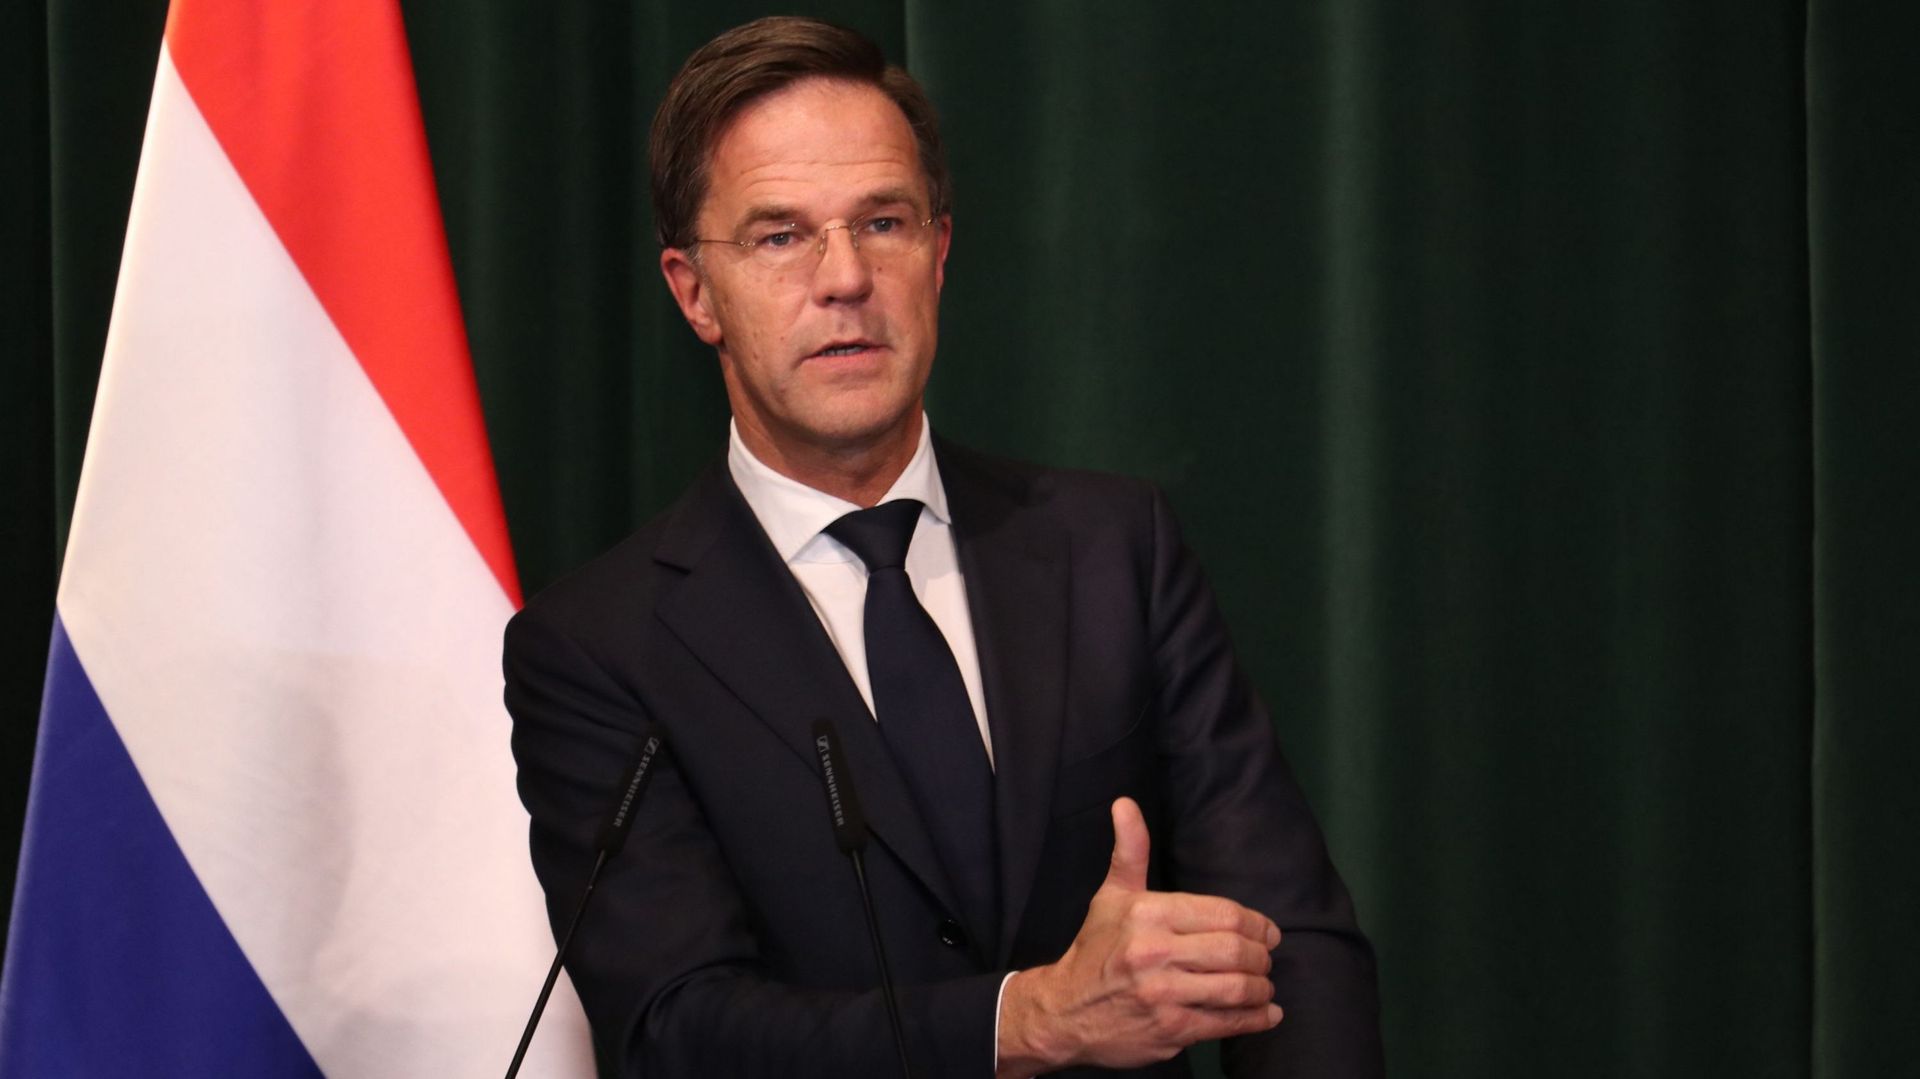 Dutch Prime Minister Mark Rutte in Albania